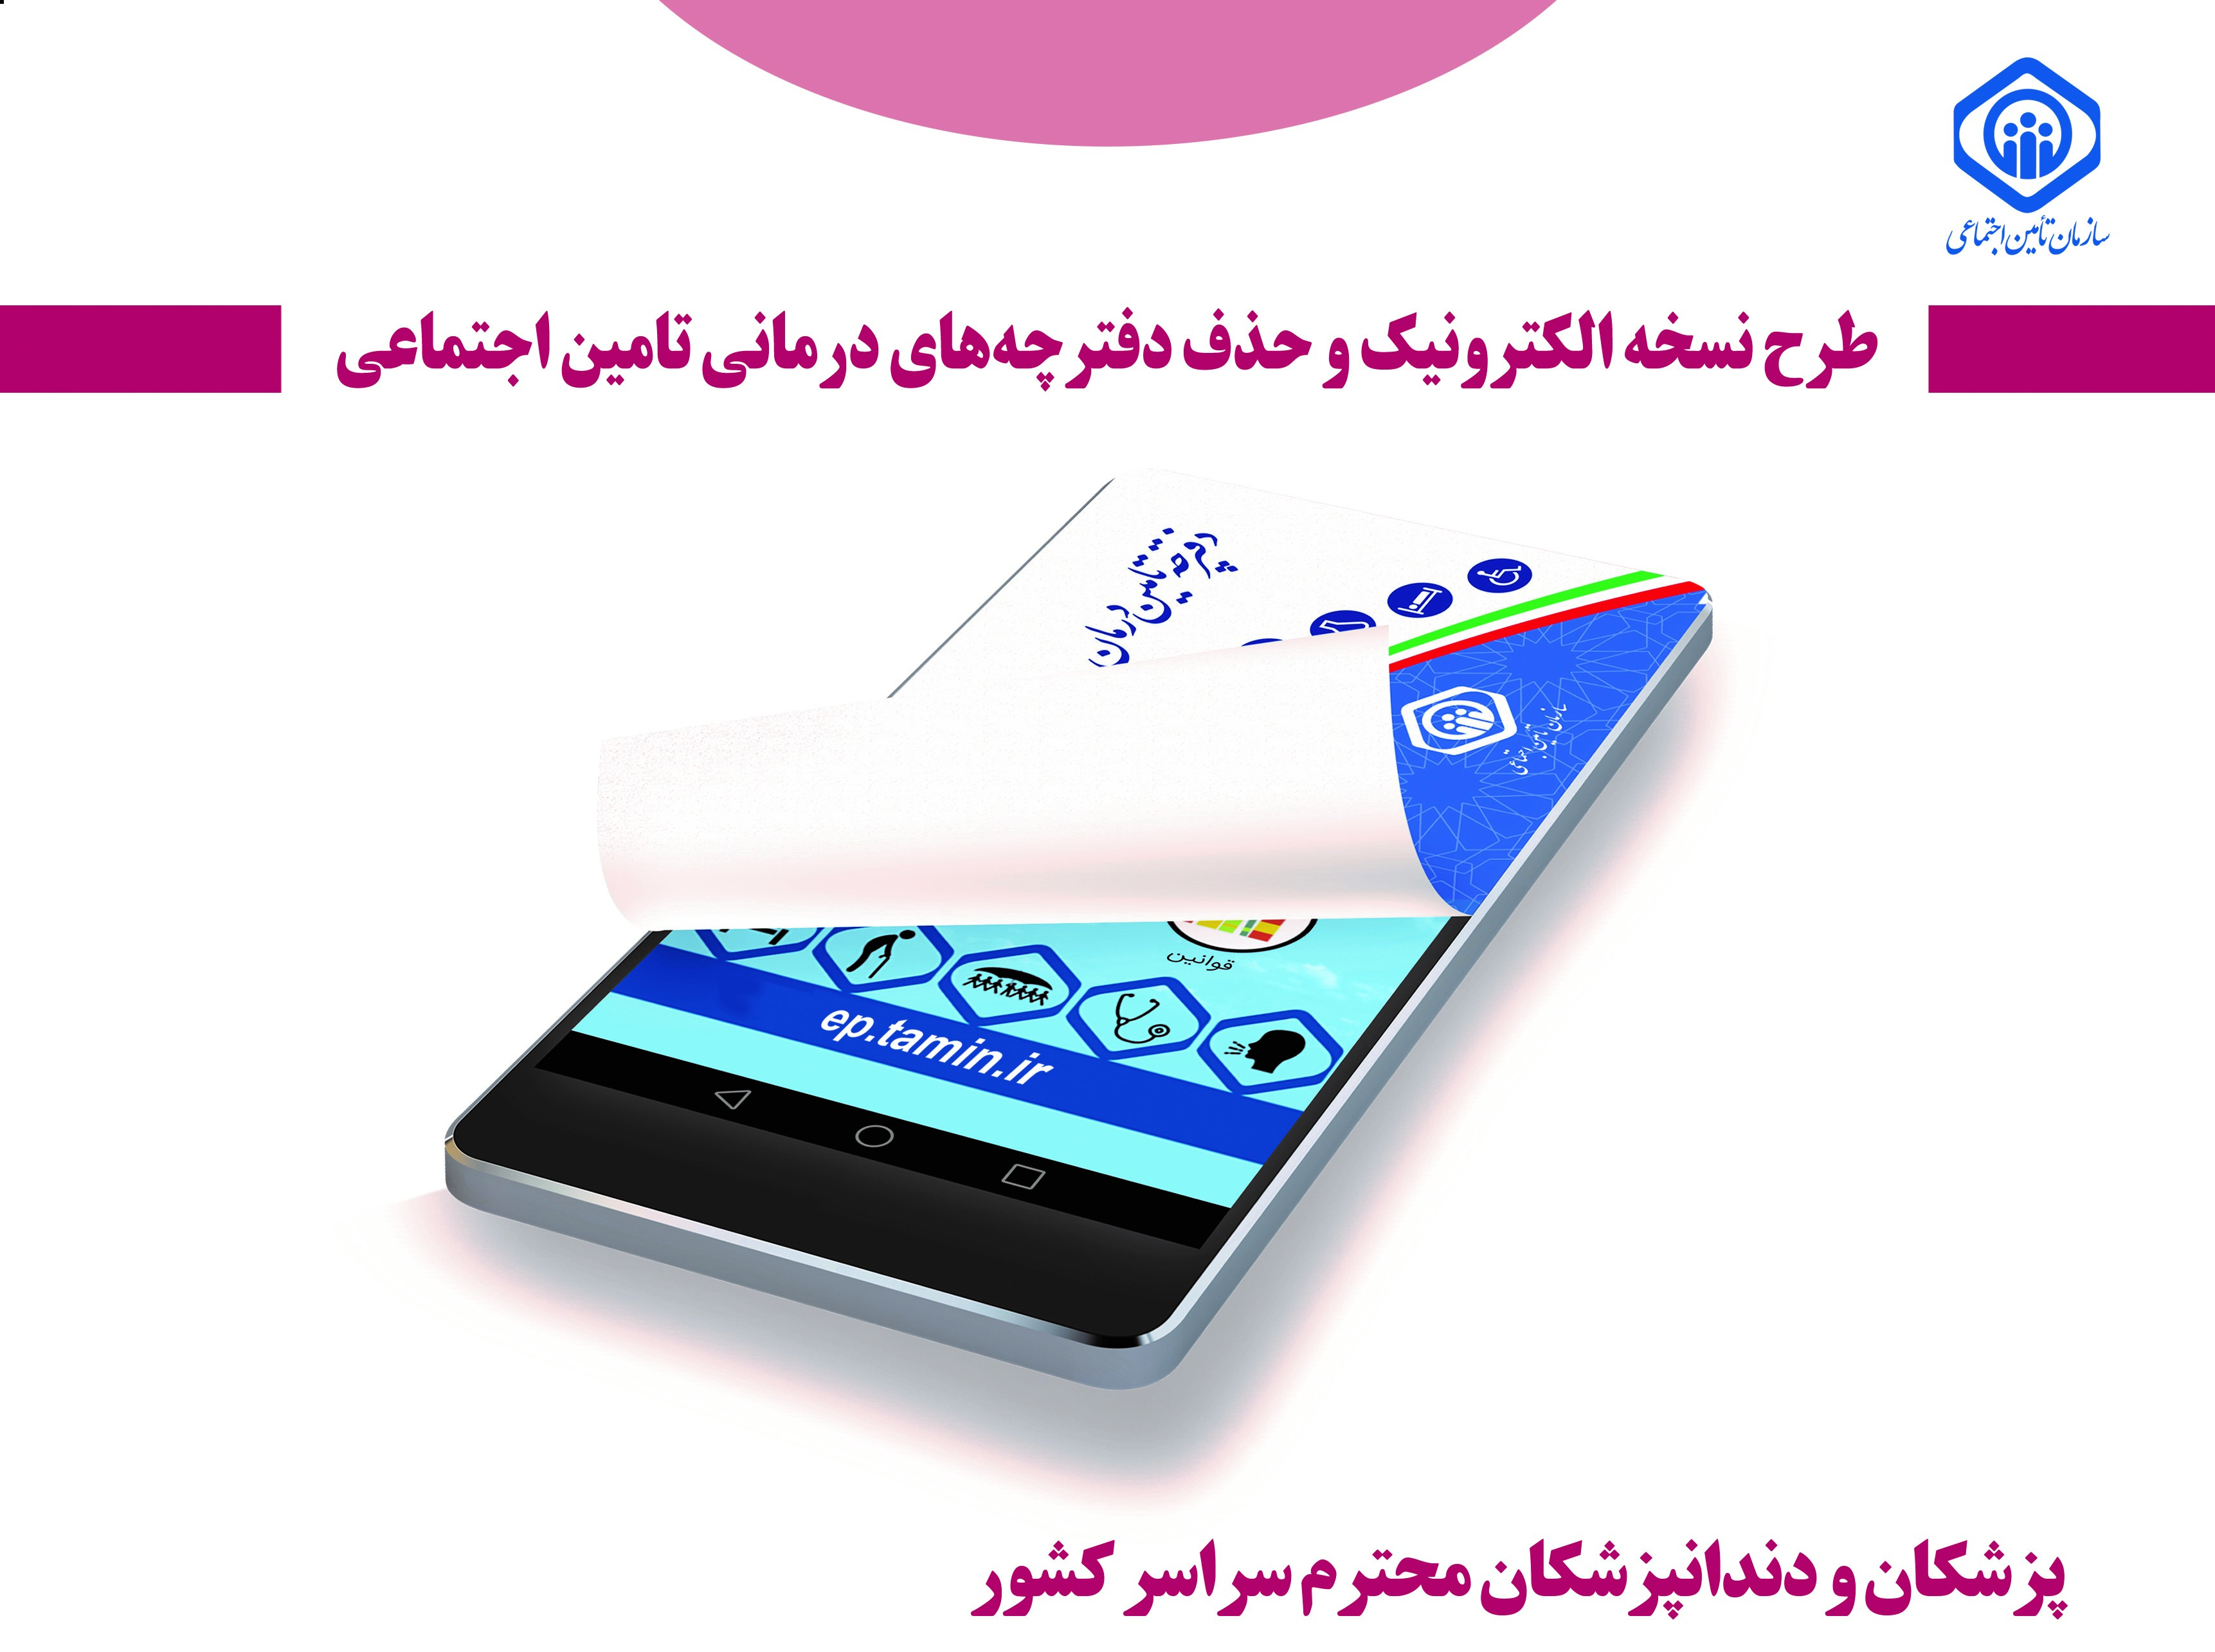 کارکرد پزشکان شرکت کننده در طرح نسخه نویسی الکترونیک تامین اجتماعی بصورت روزانه ، علی الحساب پرداخت می گردد